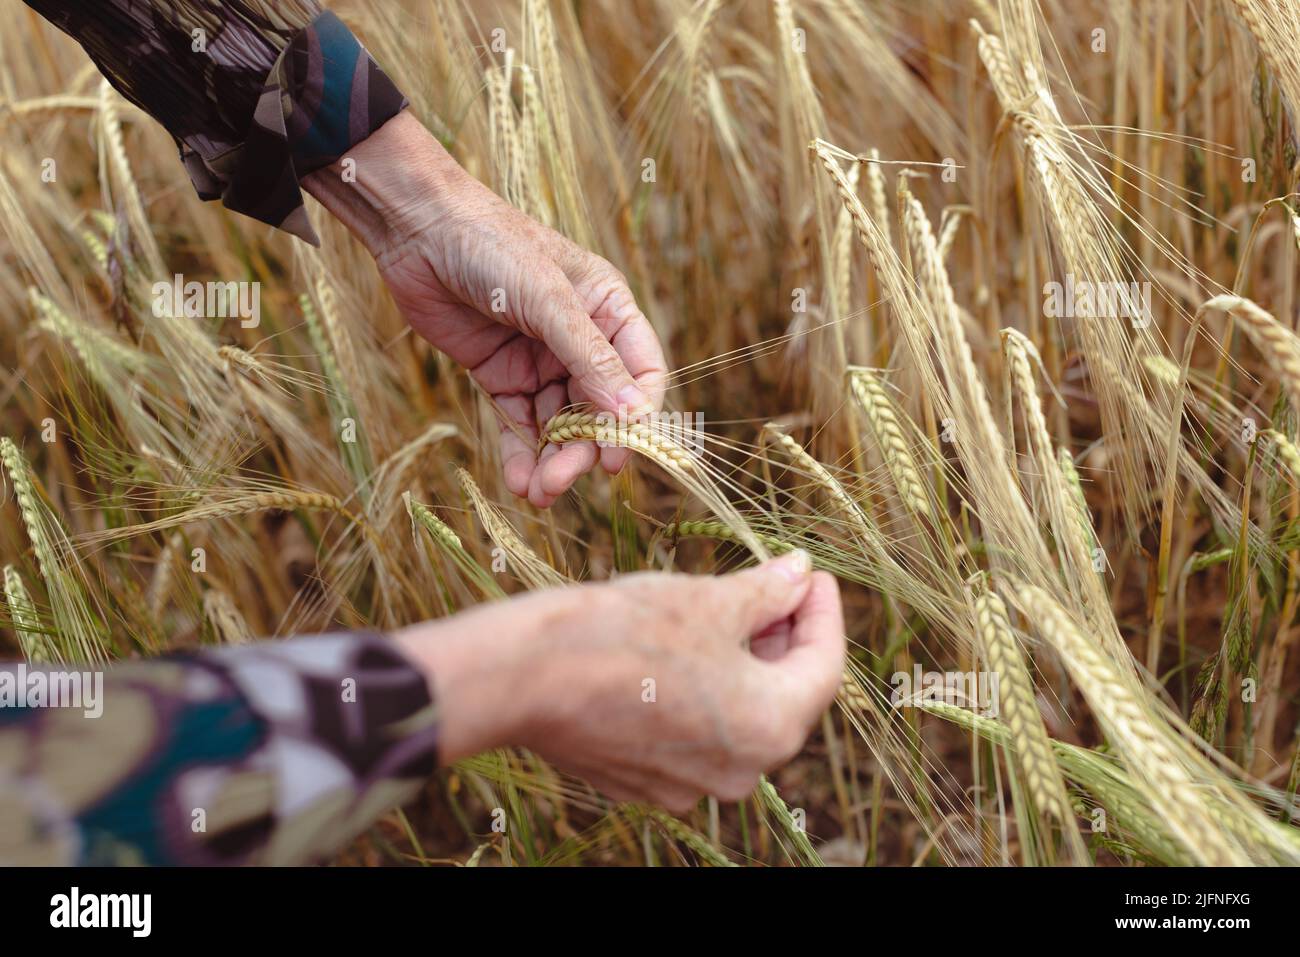 Nahaufnahme der Hände, die zeigen, wie Gerstenohren in einem Gerstenfeld in Wiltshire aussehen. Gerste enthält viele wichtige Nährstoffe. Stockfoto